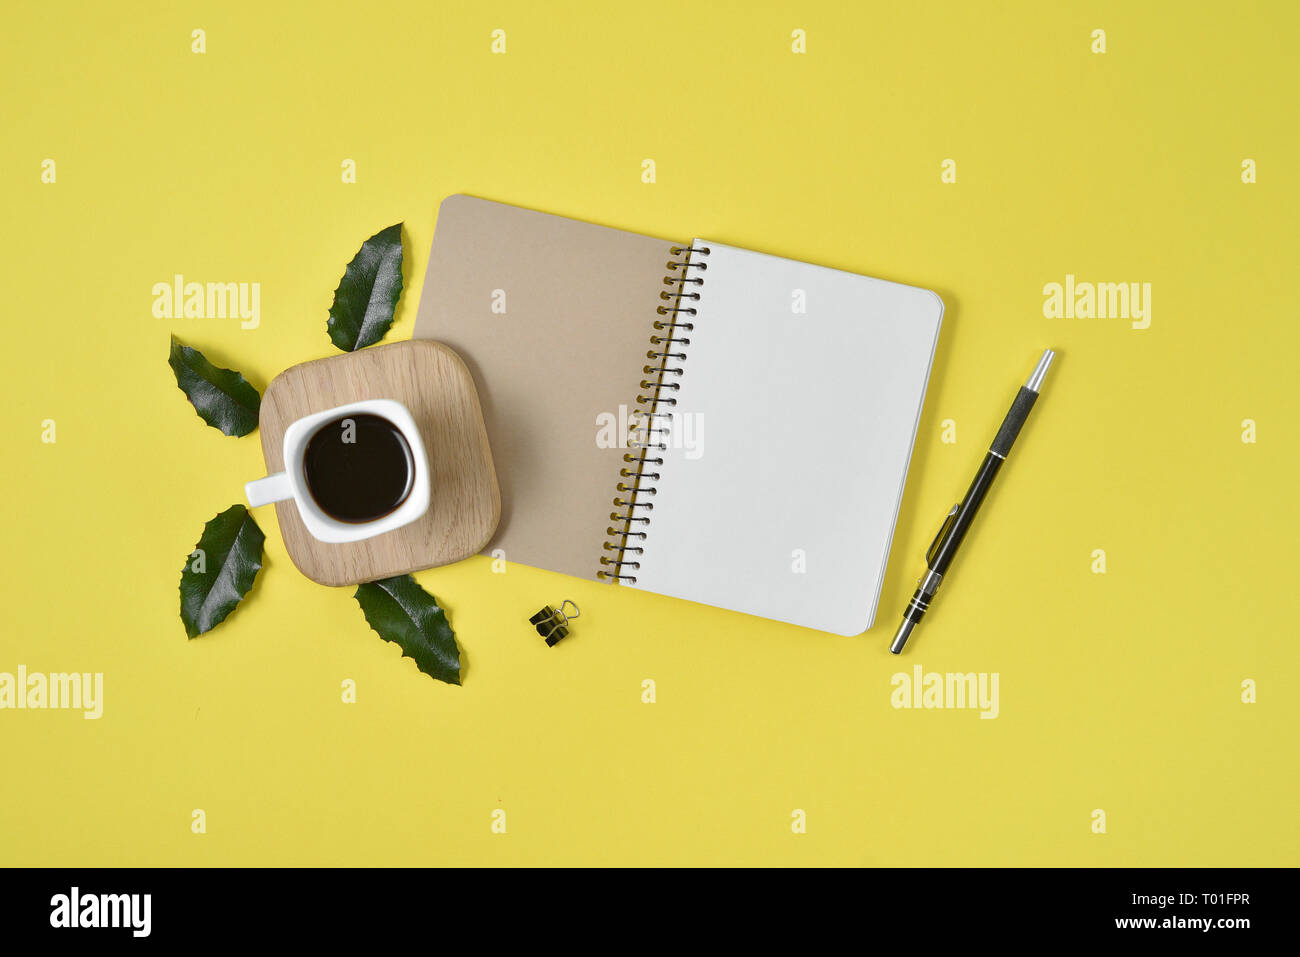 Gelb Büro Schreibtisch Tisch mit leeren Notebook, grünes Blatt, Stift, Zubehör und Kaffee Tasse. Flach, Ansicht von oben mit der Kopie. Stilvolle weibliche Konzept. Stockfoto